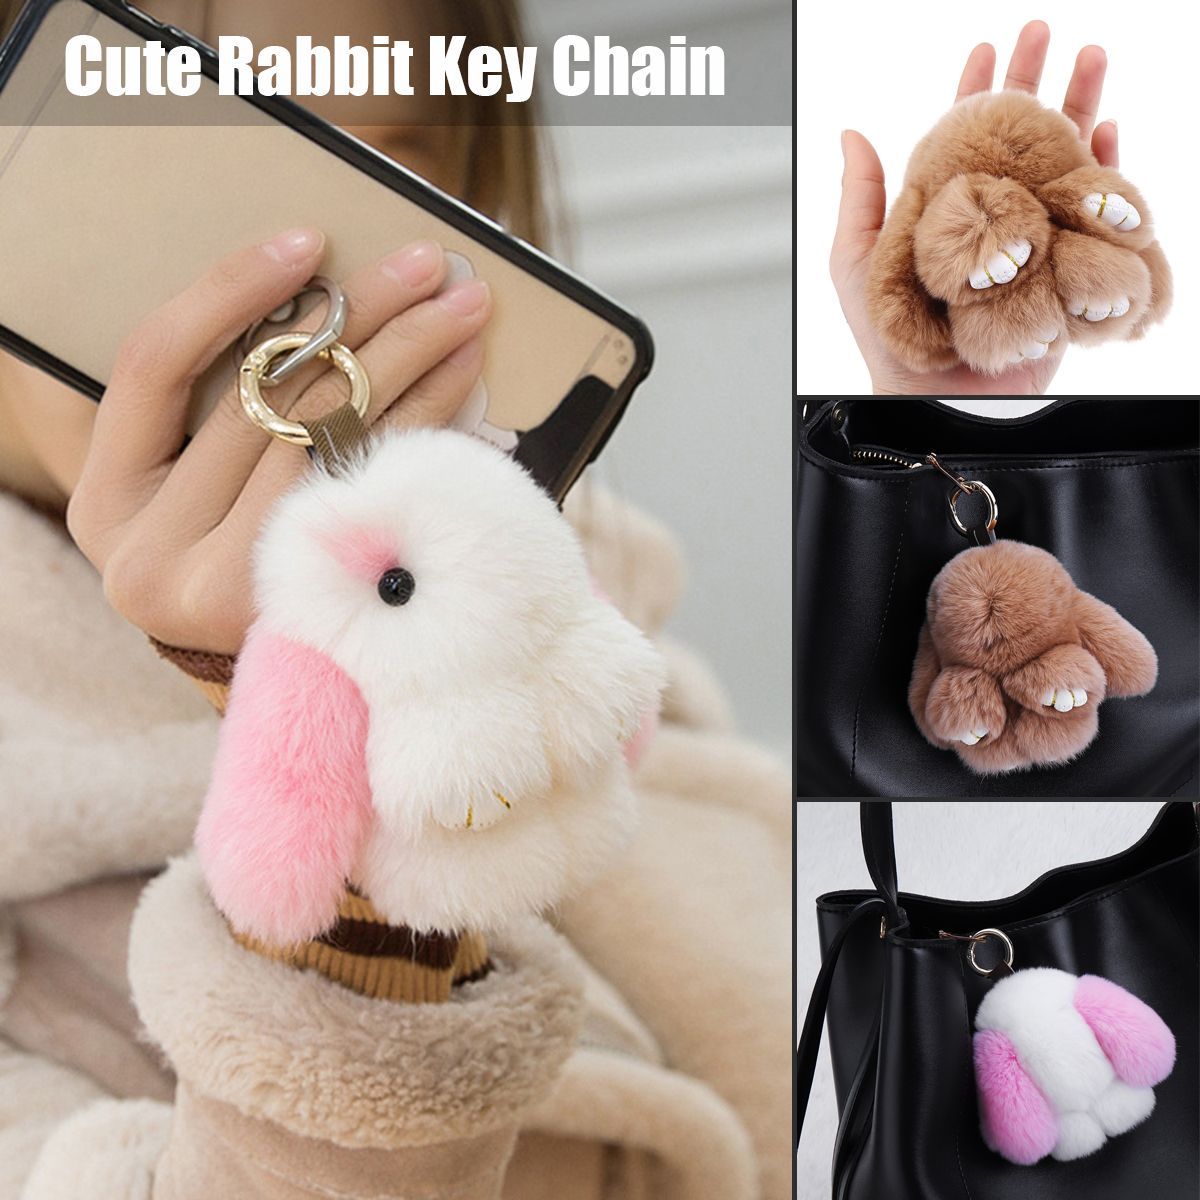 Cute-Rabbit-Key-Chain-Soft-Bunny-Fluffy-Doll-Bag-Pendant-Car-Keyring-1522939